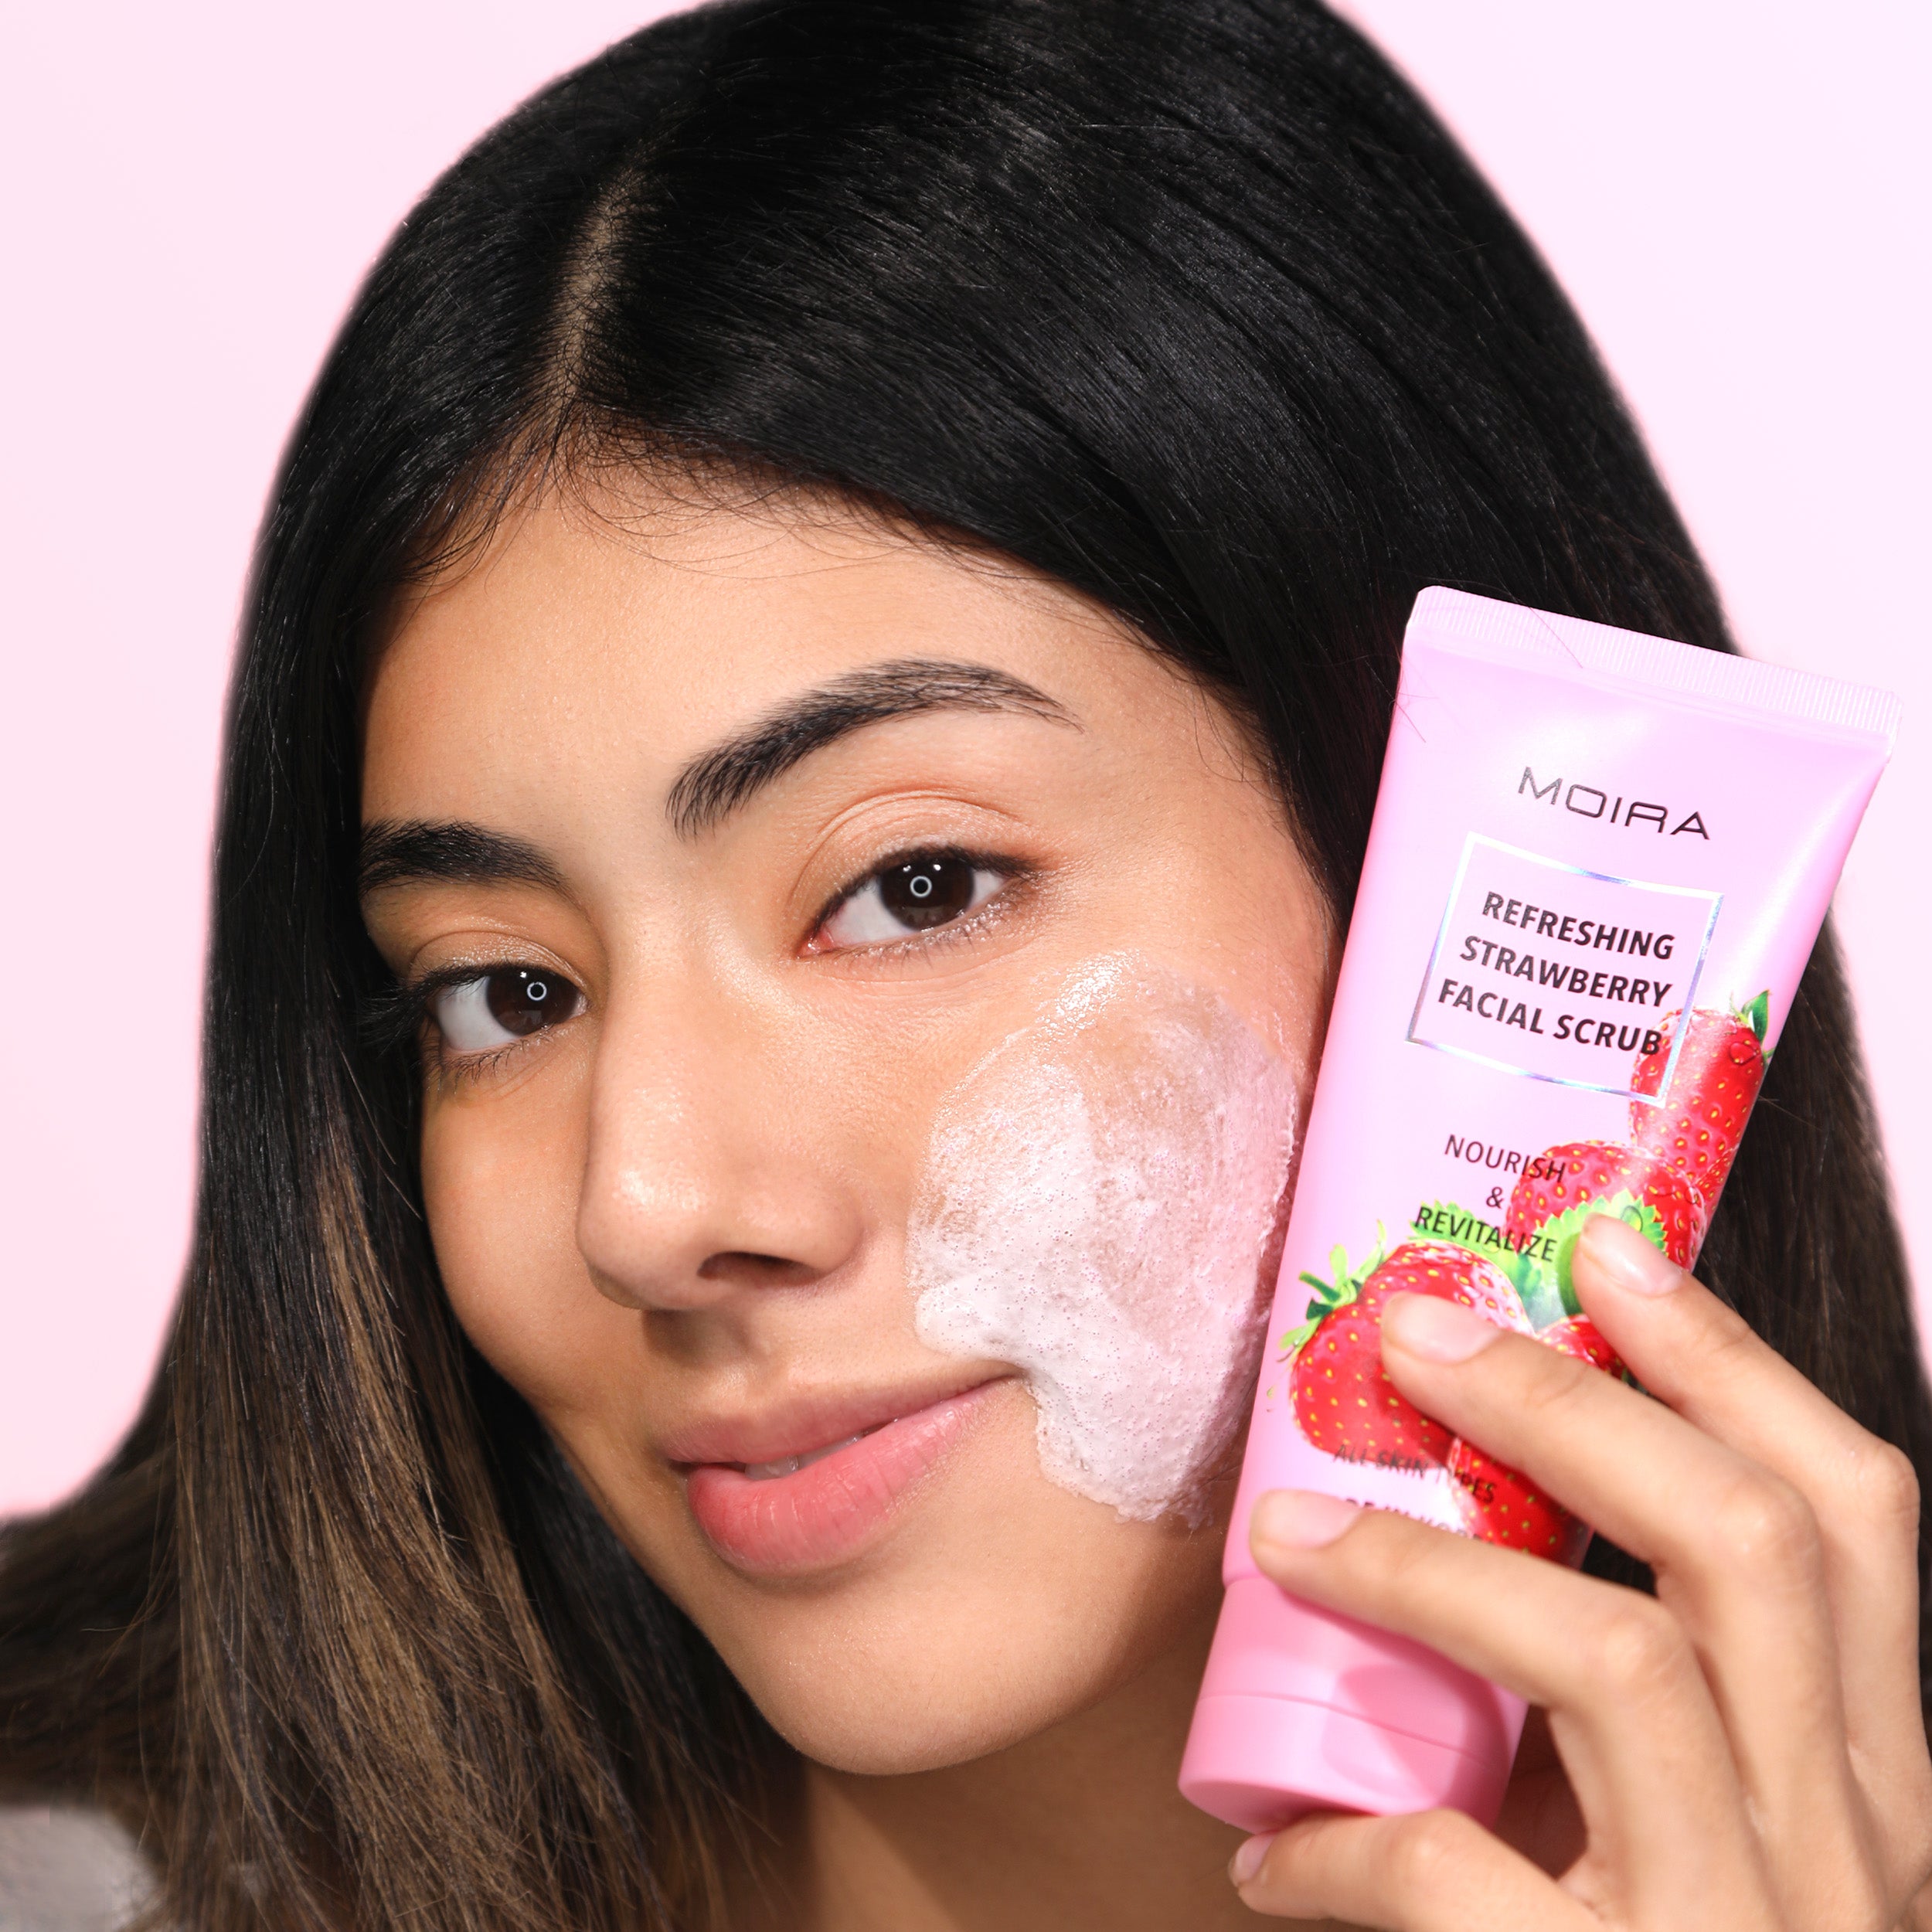 Refreshing Strawberry Facial Scrub